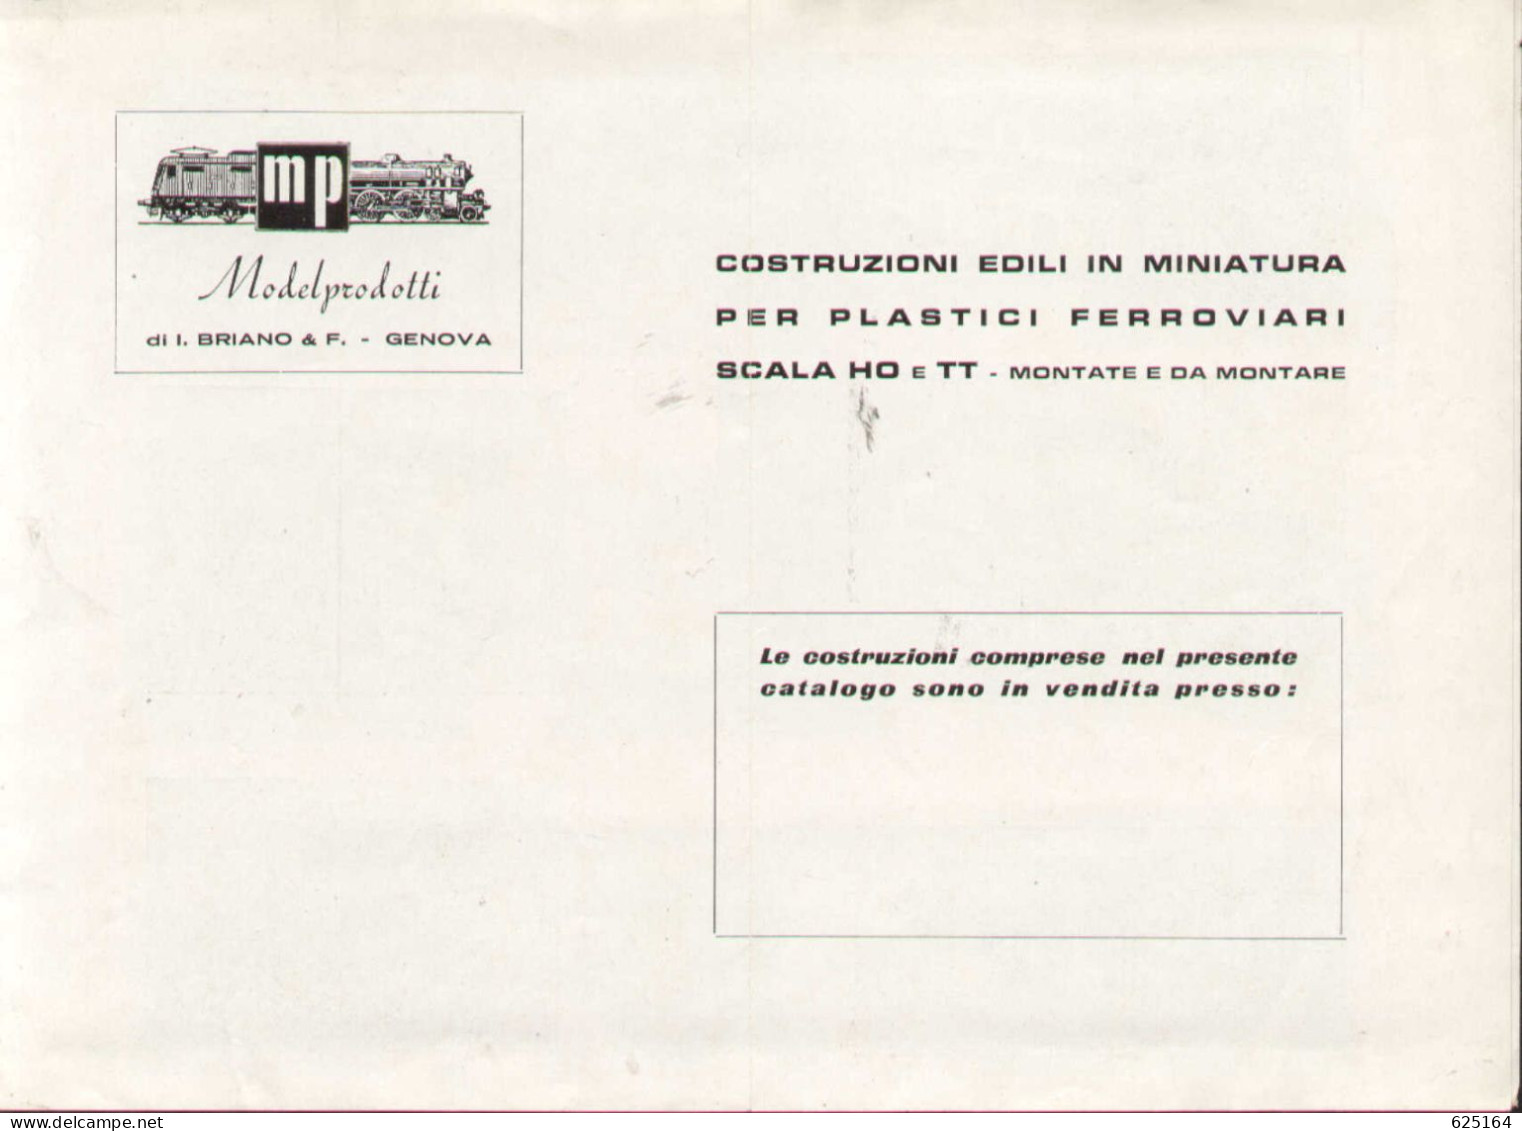 Catalogue MP ModelProdotti 1959? Ed. Italo Briano Genova Accessori HO - En Italien - Sin Clasificación